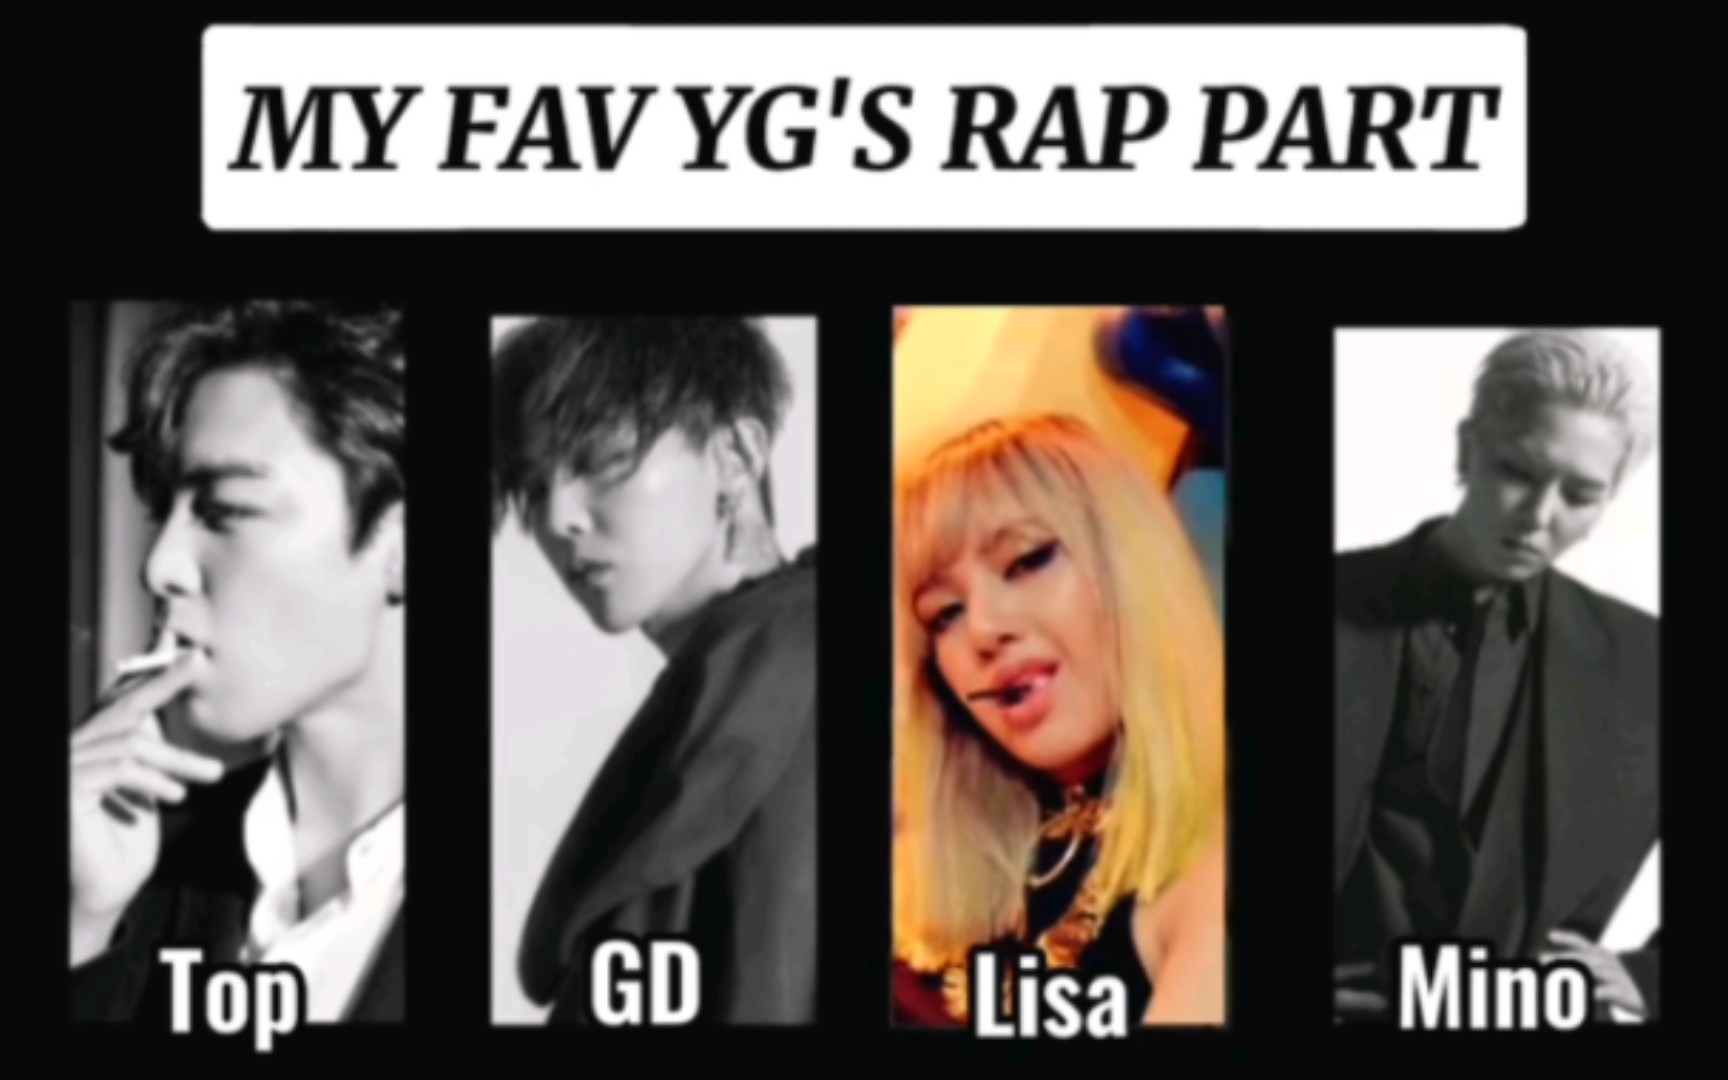 YG引以为豪的顶级Rap part！